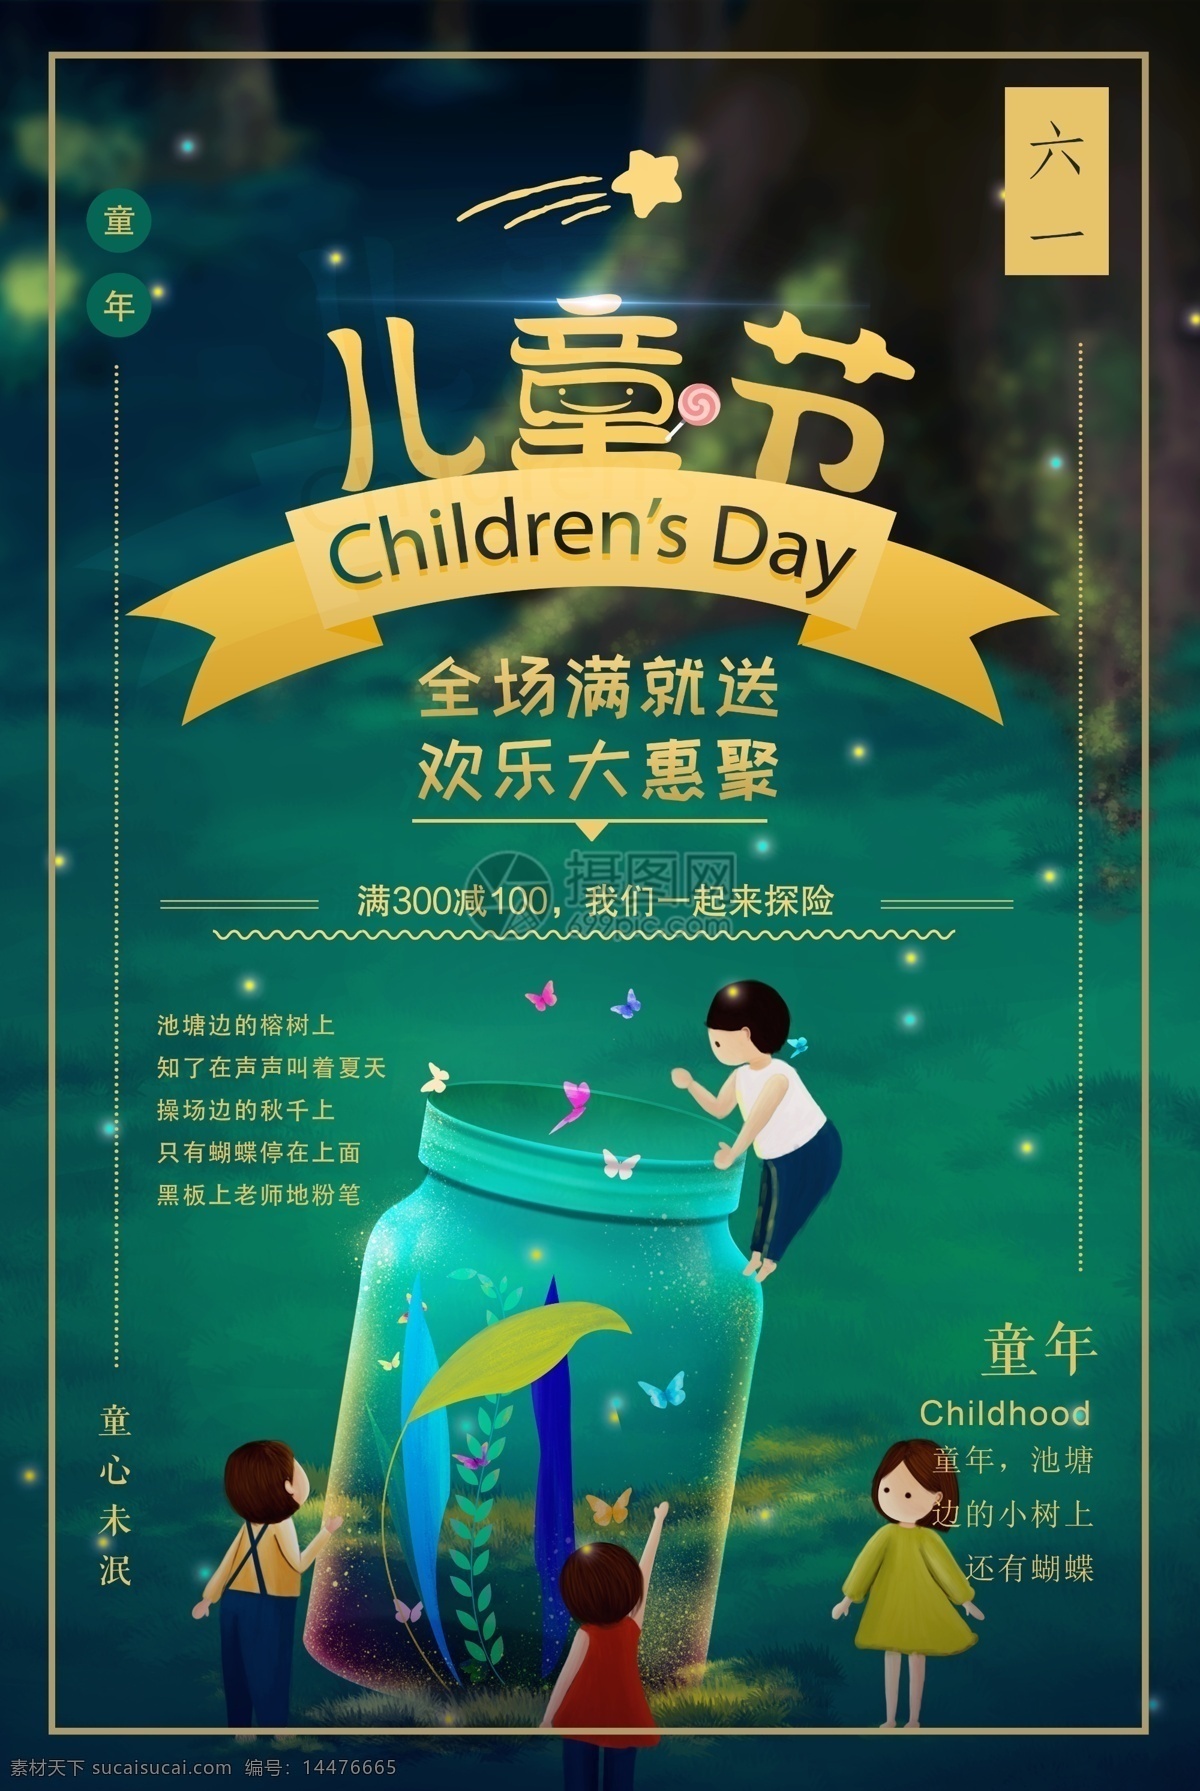 六一儿童节 促销 海报 61 六一 欢乐 儿童节 探险 梦幻 快乐 卡通 森林 宣传 童年 童真 小孩 促销海报